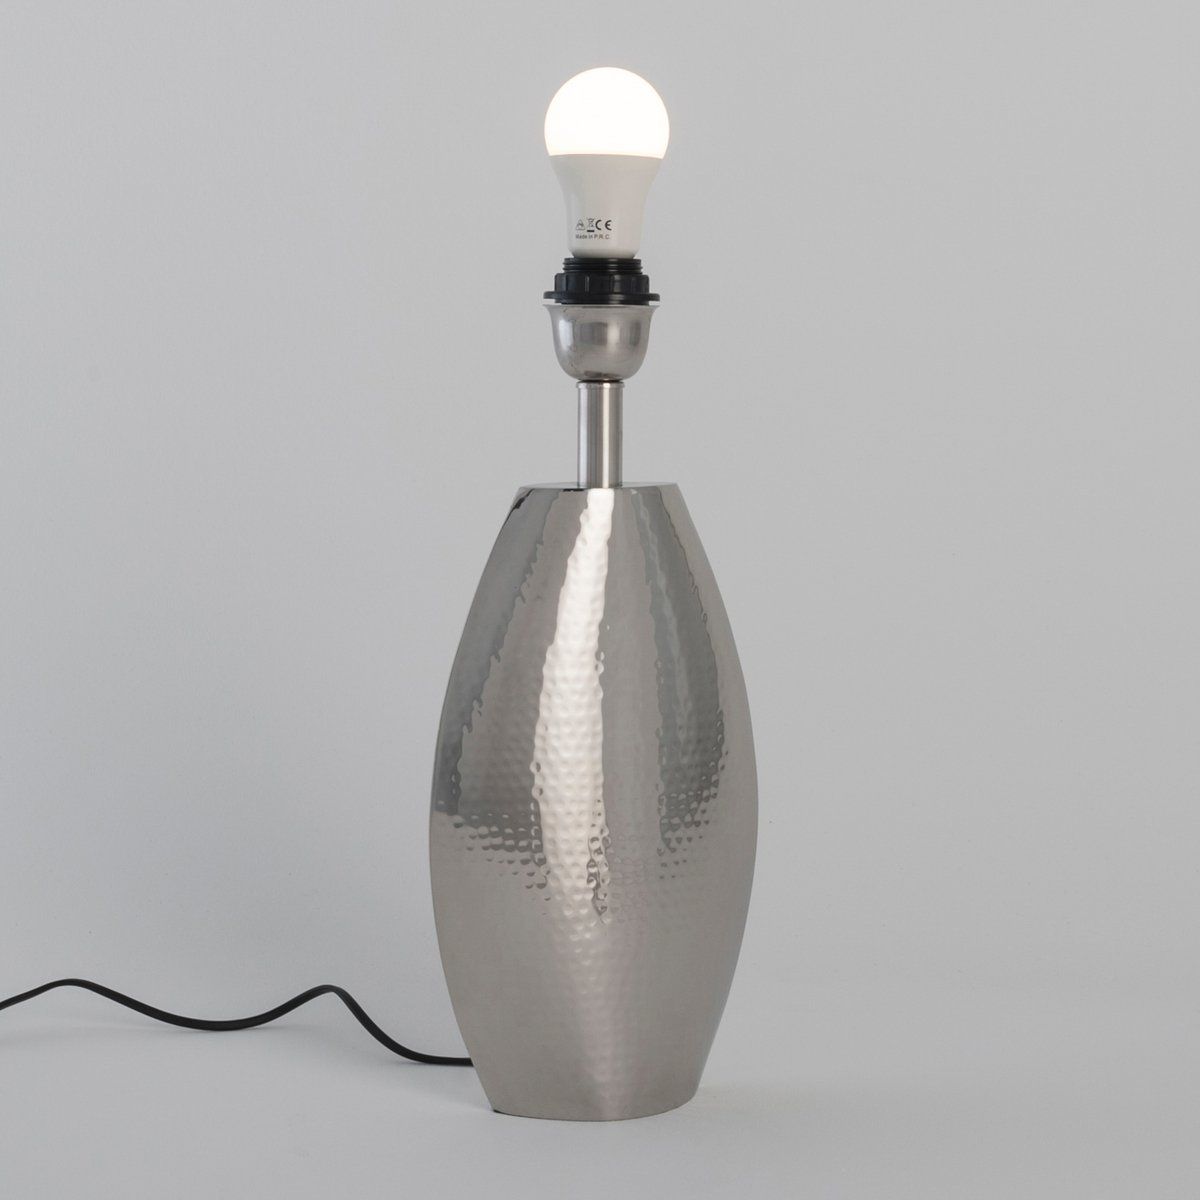 Pied de lampadaire LED VALLS en métal argent chrome